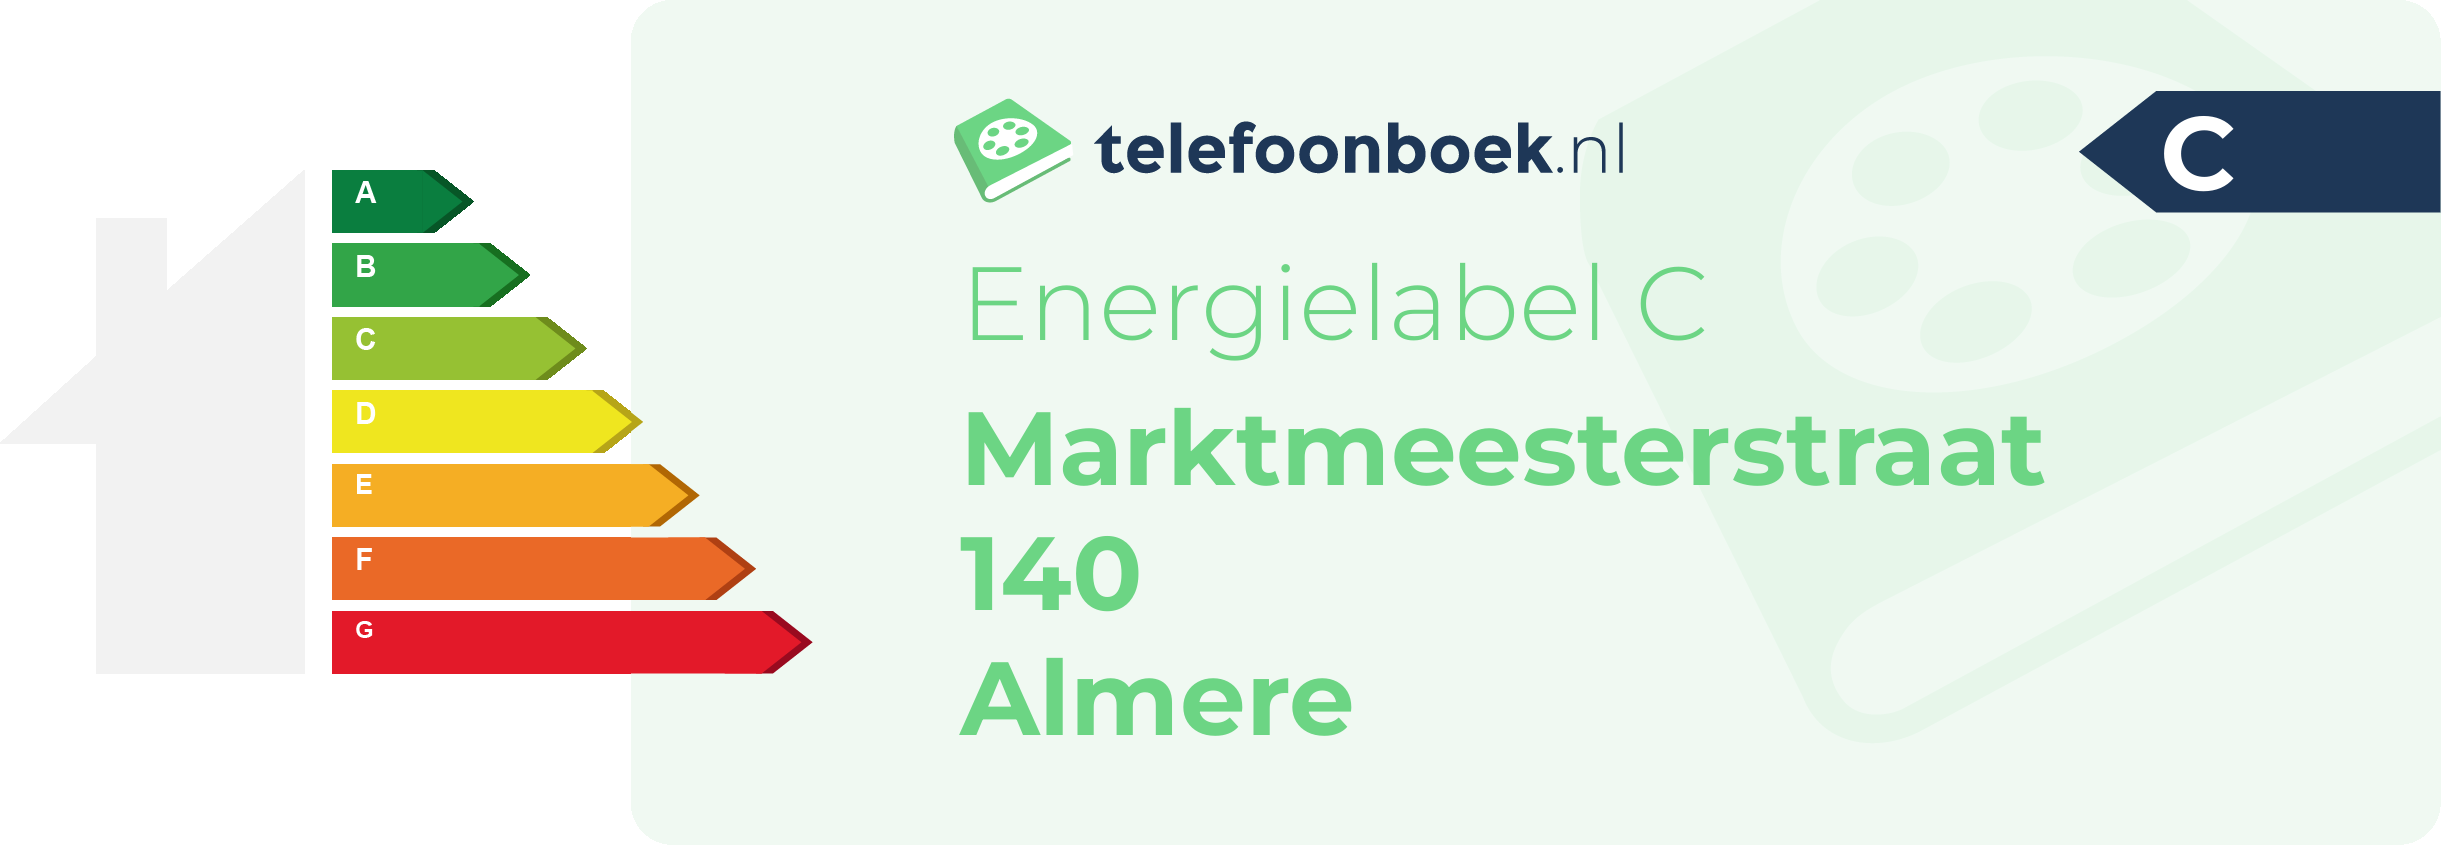 Energielabel Marktmeesterstraat 140 Almere